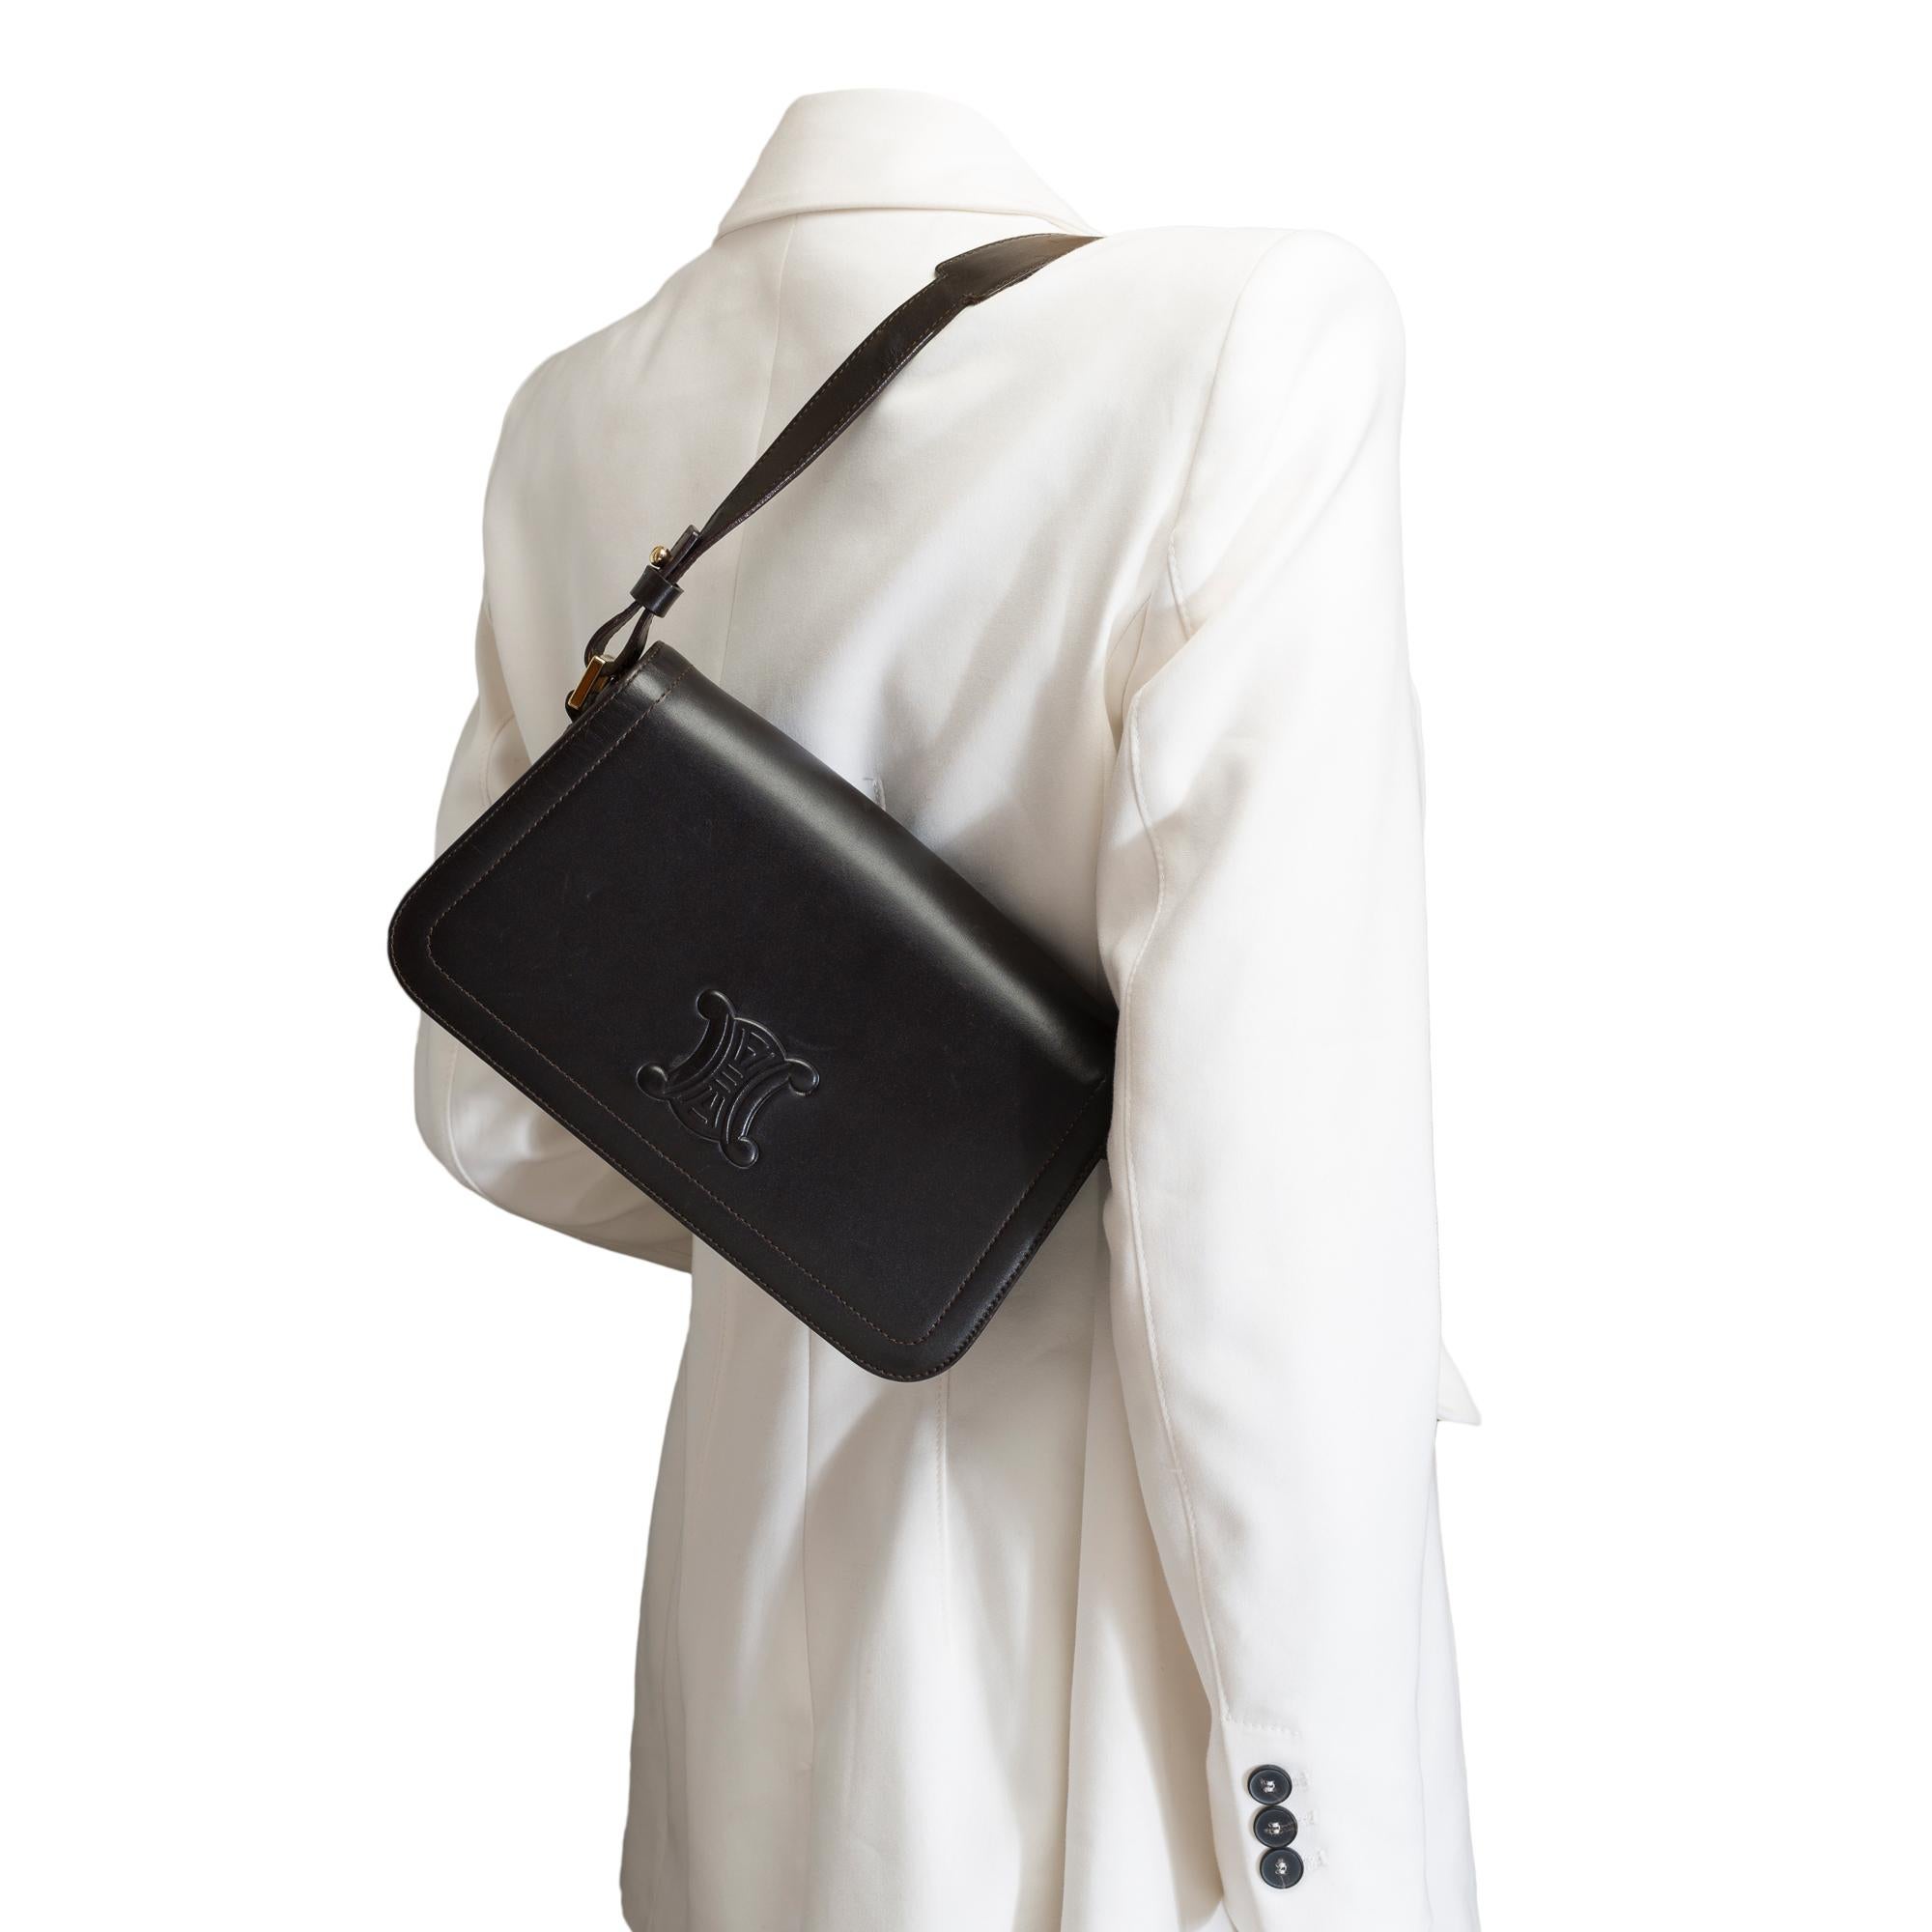 Celine Triomphe shoulder flap bag in black leather, GHW 8